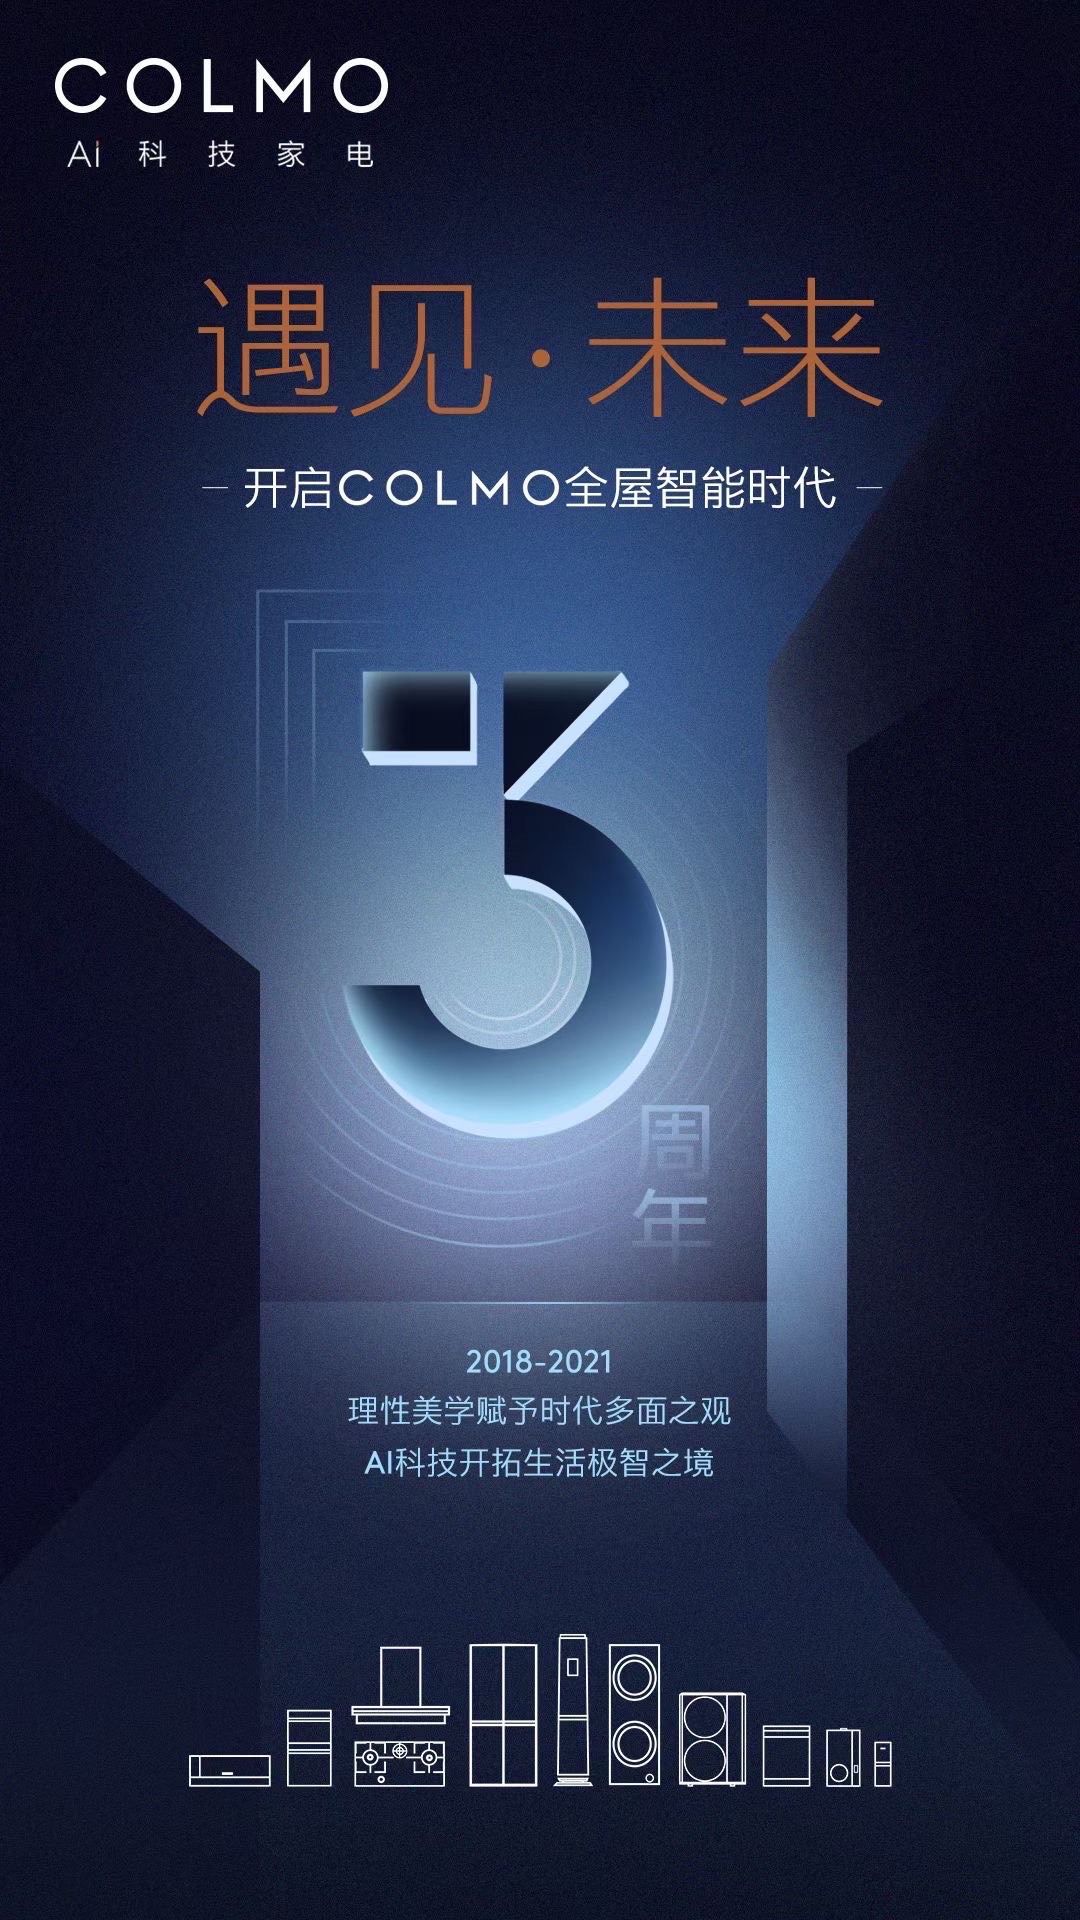 10月19日，AI科技家电高端品牌COLMO迎来品牌三周年纪念。自成立以来，秉承着以理性美学引领高阶生活进化的品牌主张，COLMO携手全球超级个体不断探索“洞悉...